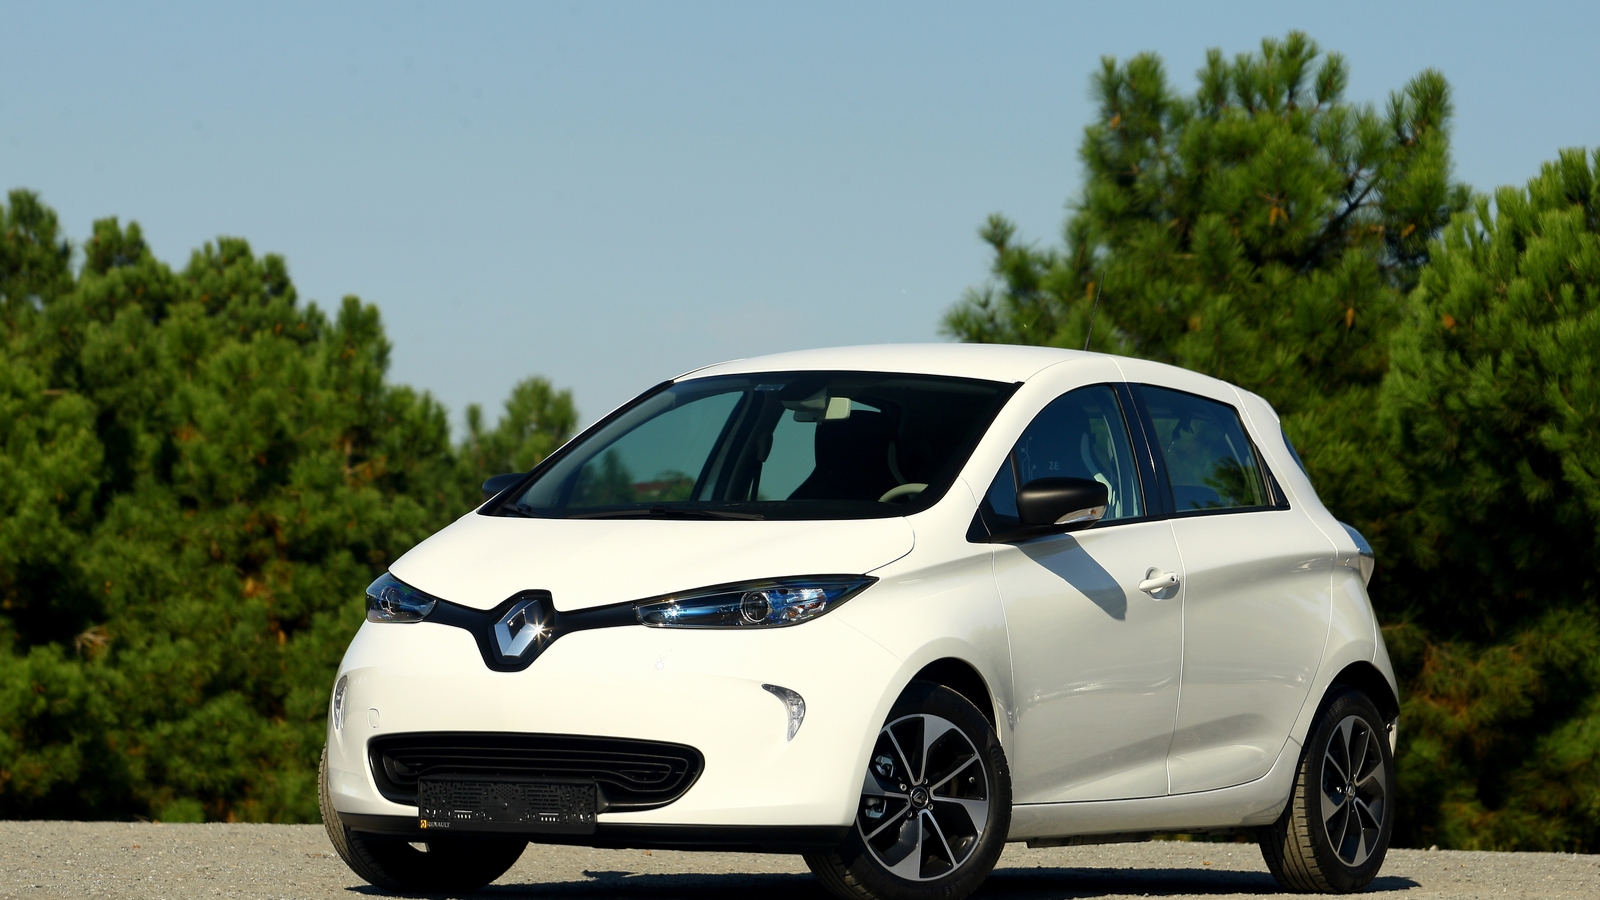 Vente de voitures électriques en France en 2019 : Renault ZOE, Tesla Model 3 et Nissan Leaf en tête